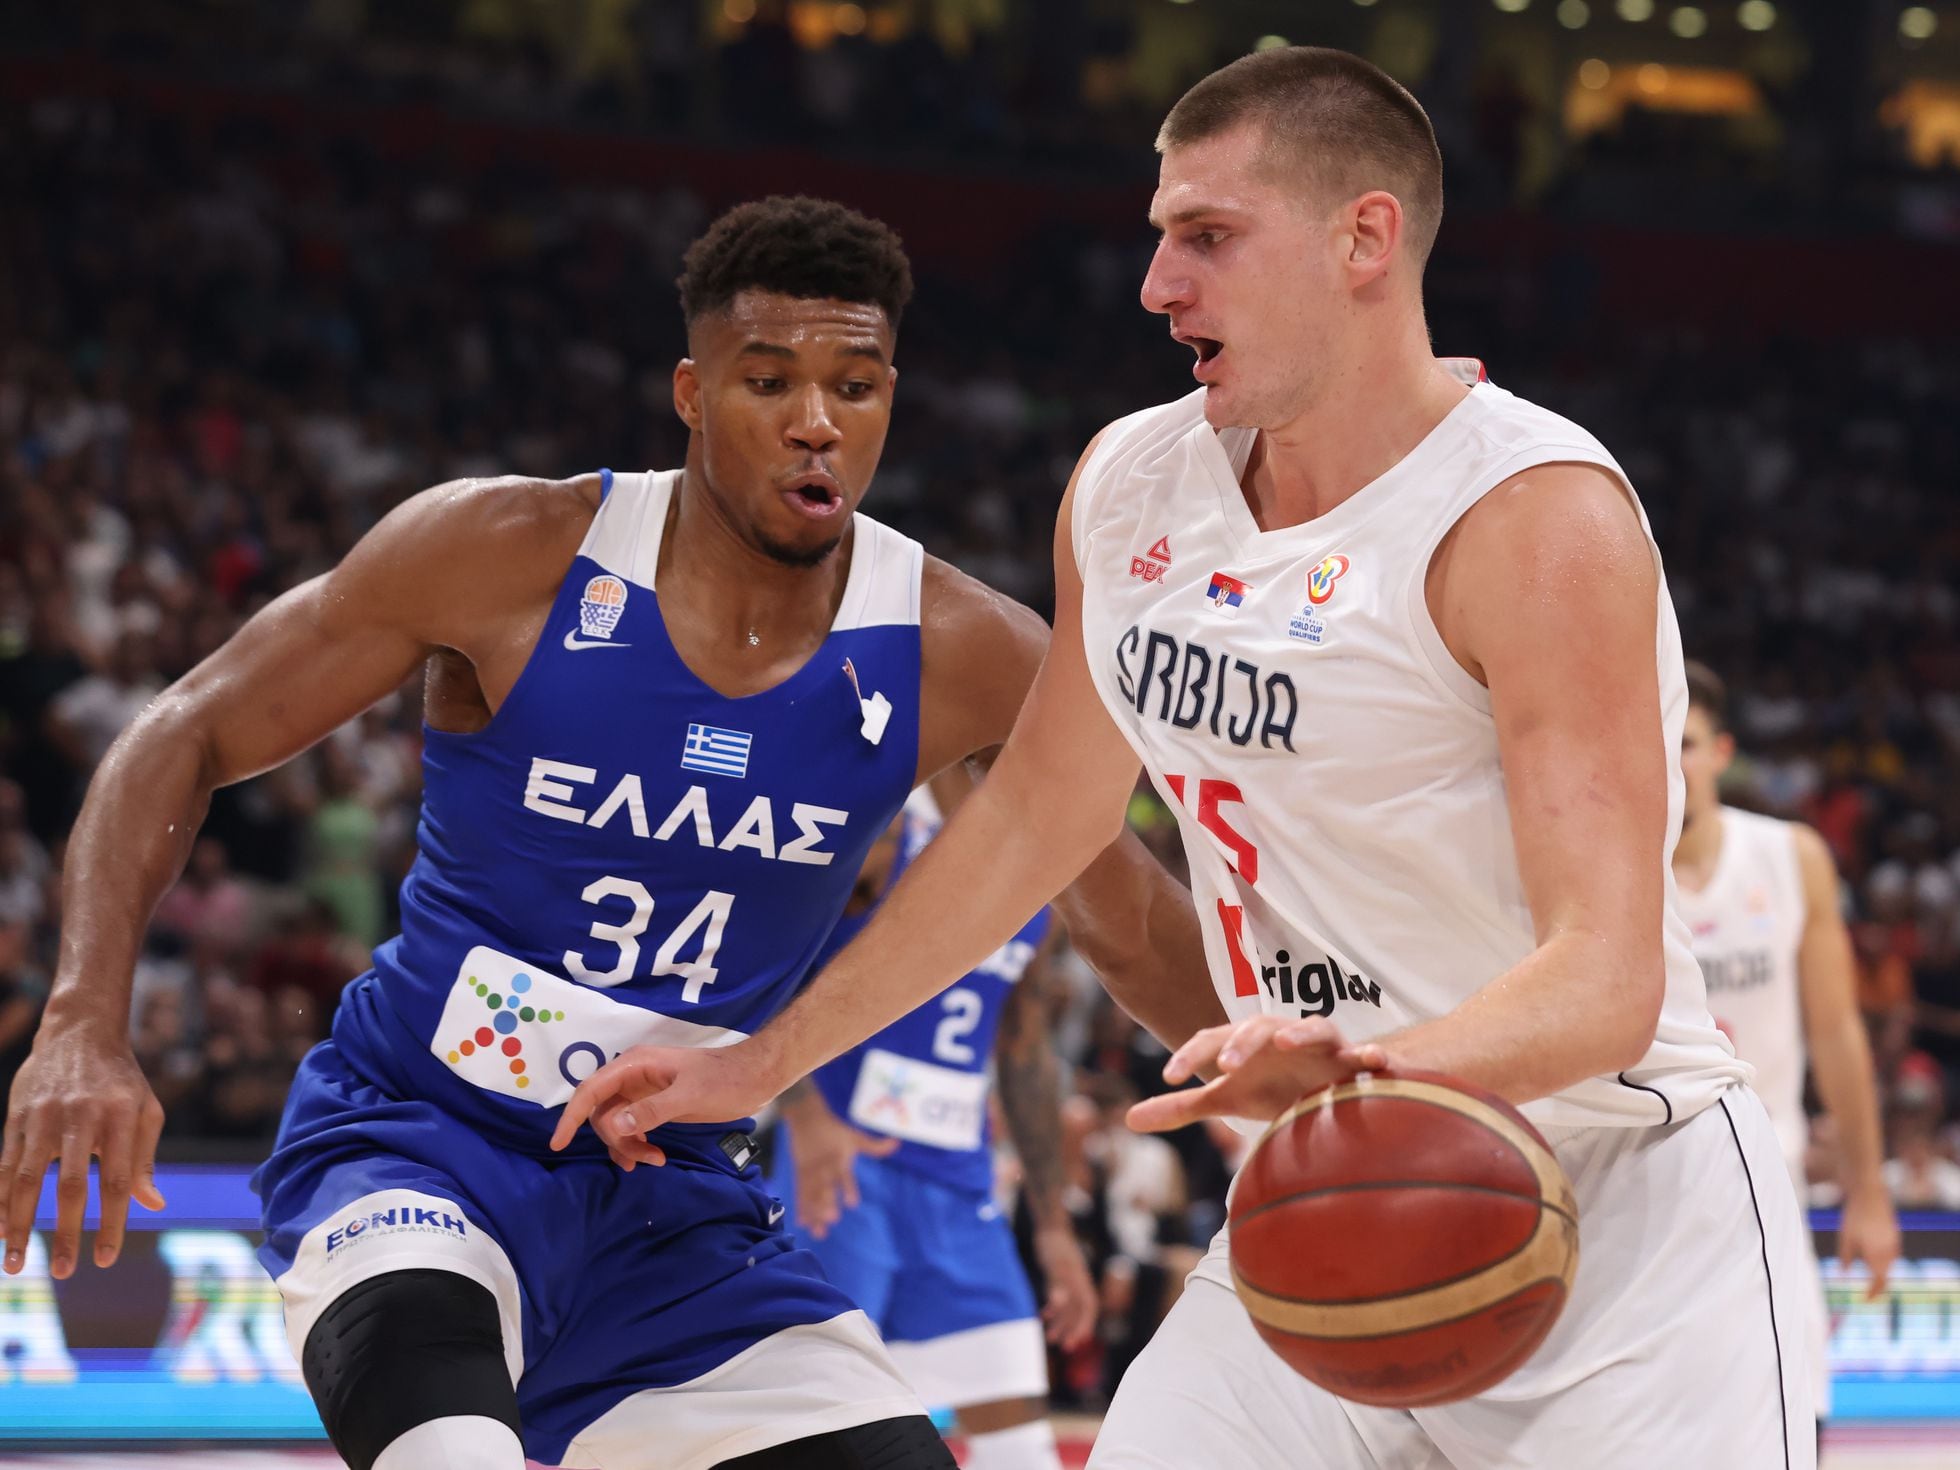 Centelleo Tranvía Armonioso Un Eurobasket con gancho NBA | Deportes | EL PAÍS